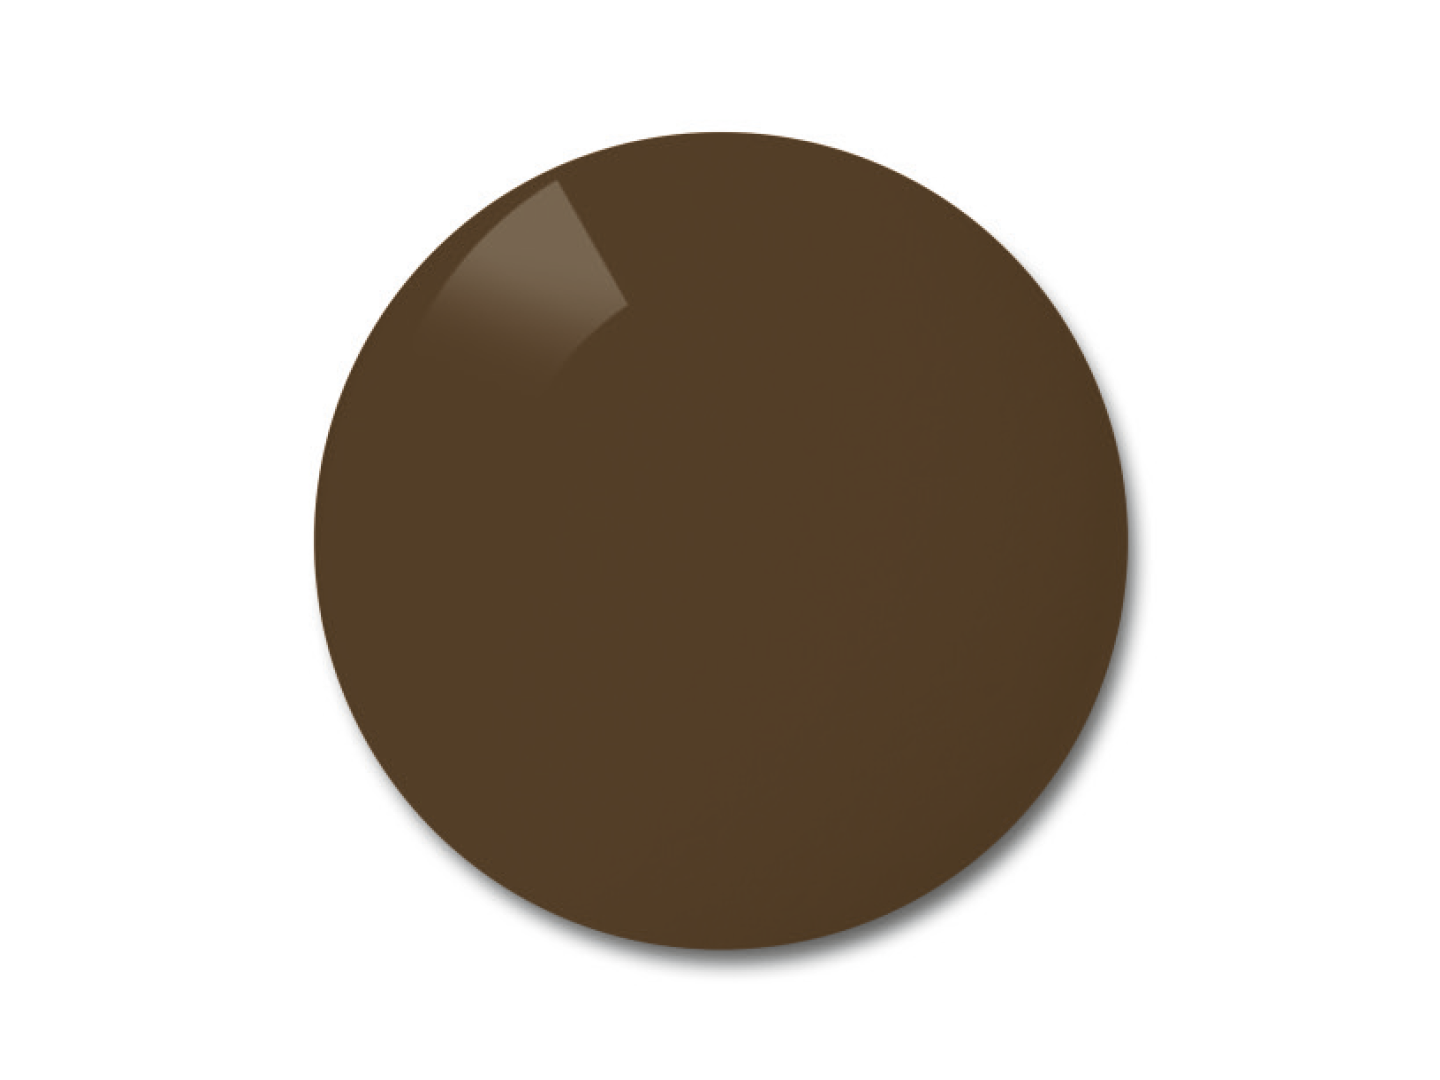 Ilustración de lentes polarizadas ZEISS en la opción de color marrón